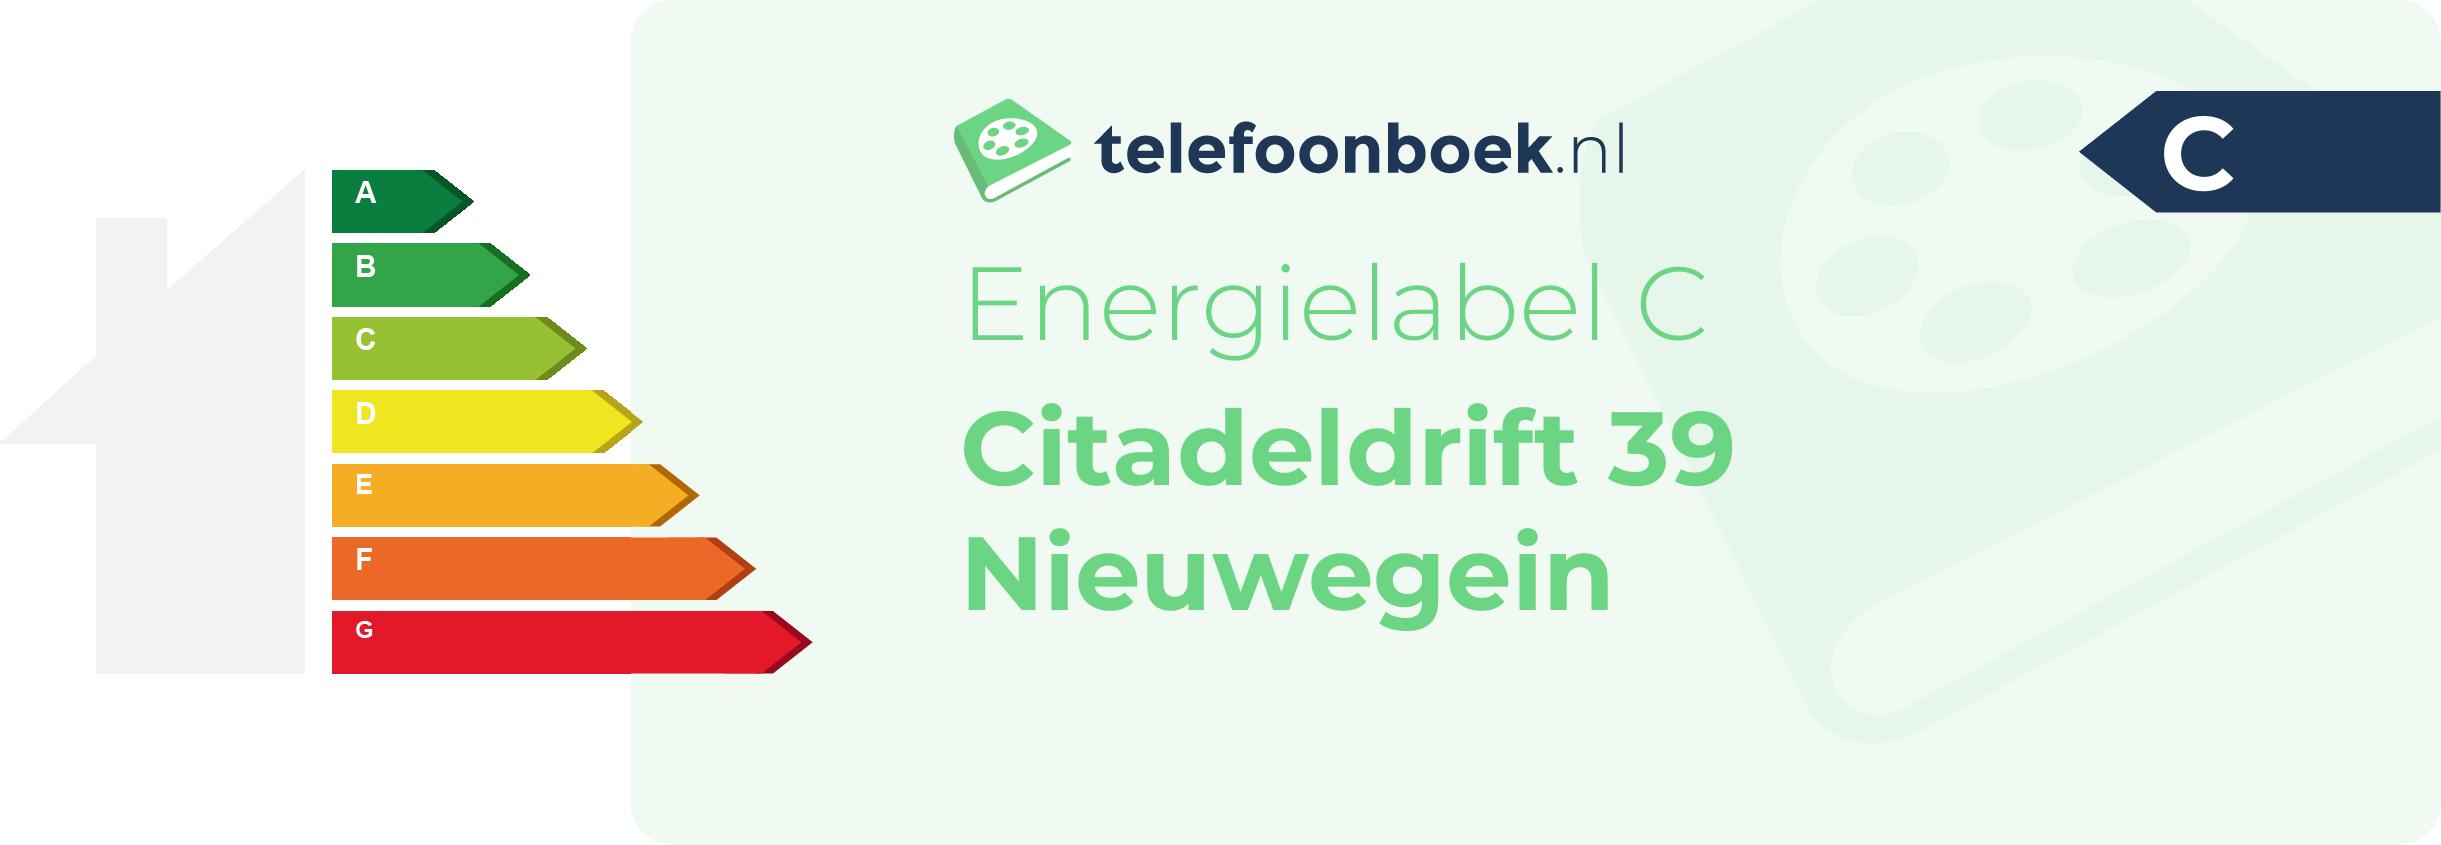 Energielabel Citadeldrift 39 Nieuwegein